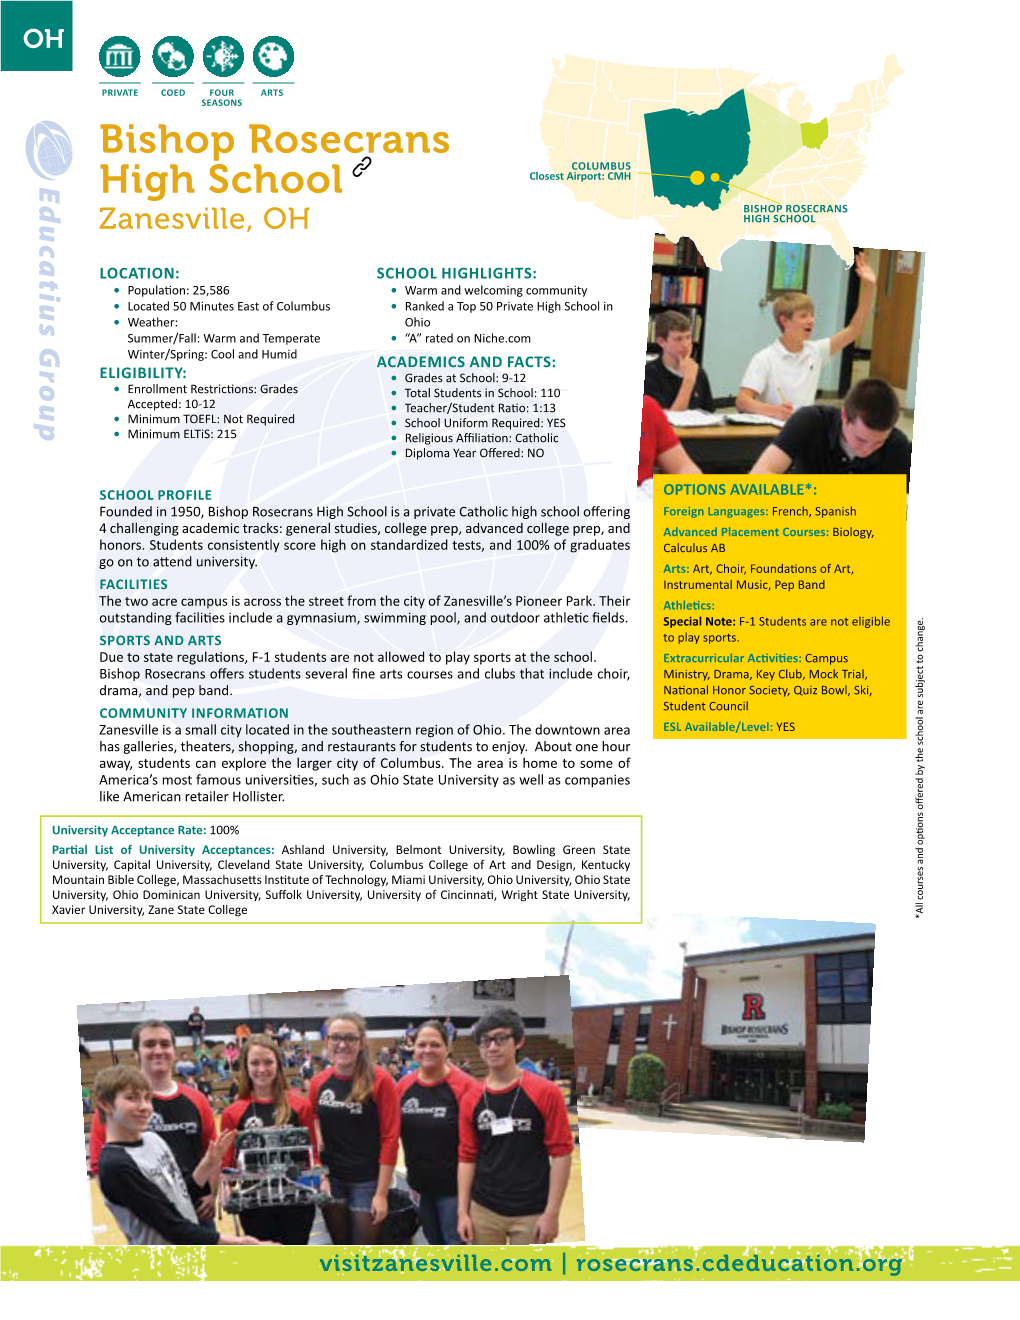 Bishop Rosecrans High School Profile